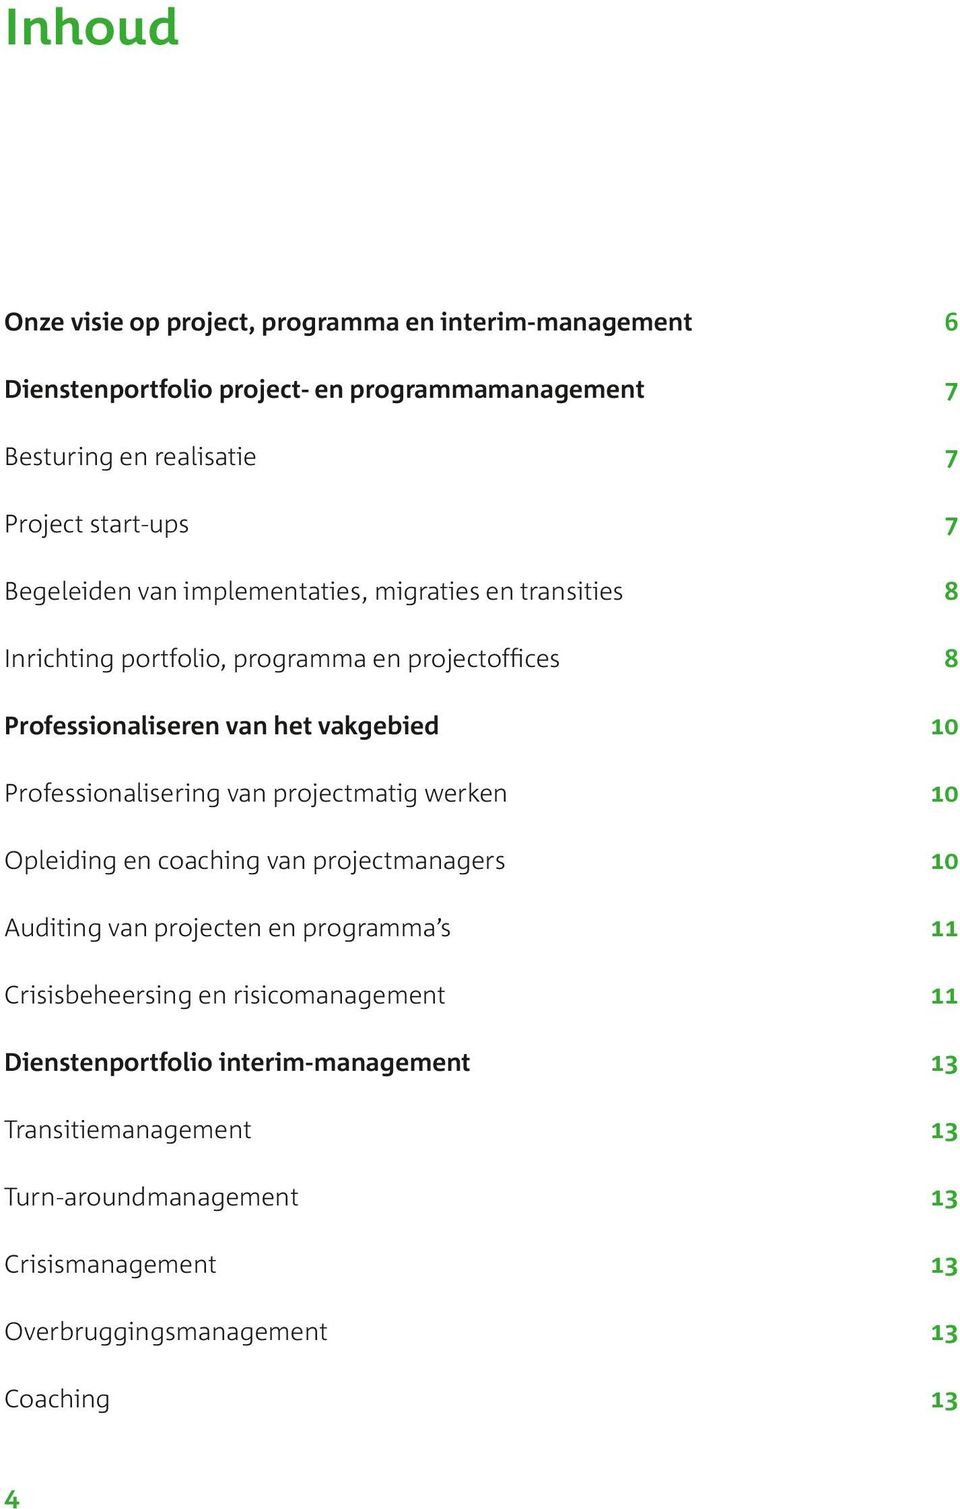 10 Professionalisering van projectmatig werken 10 Opleiding en coaching van projectmanagers 10 Auditing van projecten en programma s 11 Crisisbeheersing en